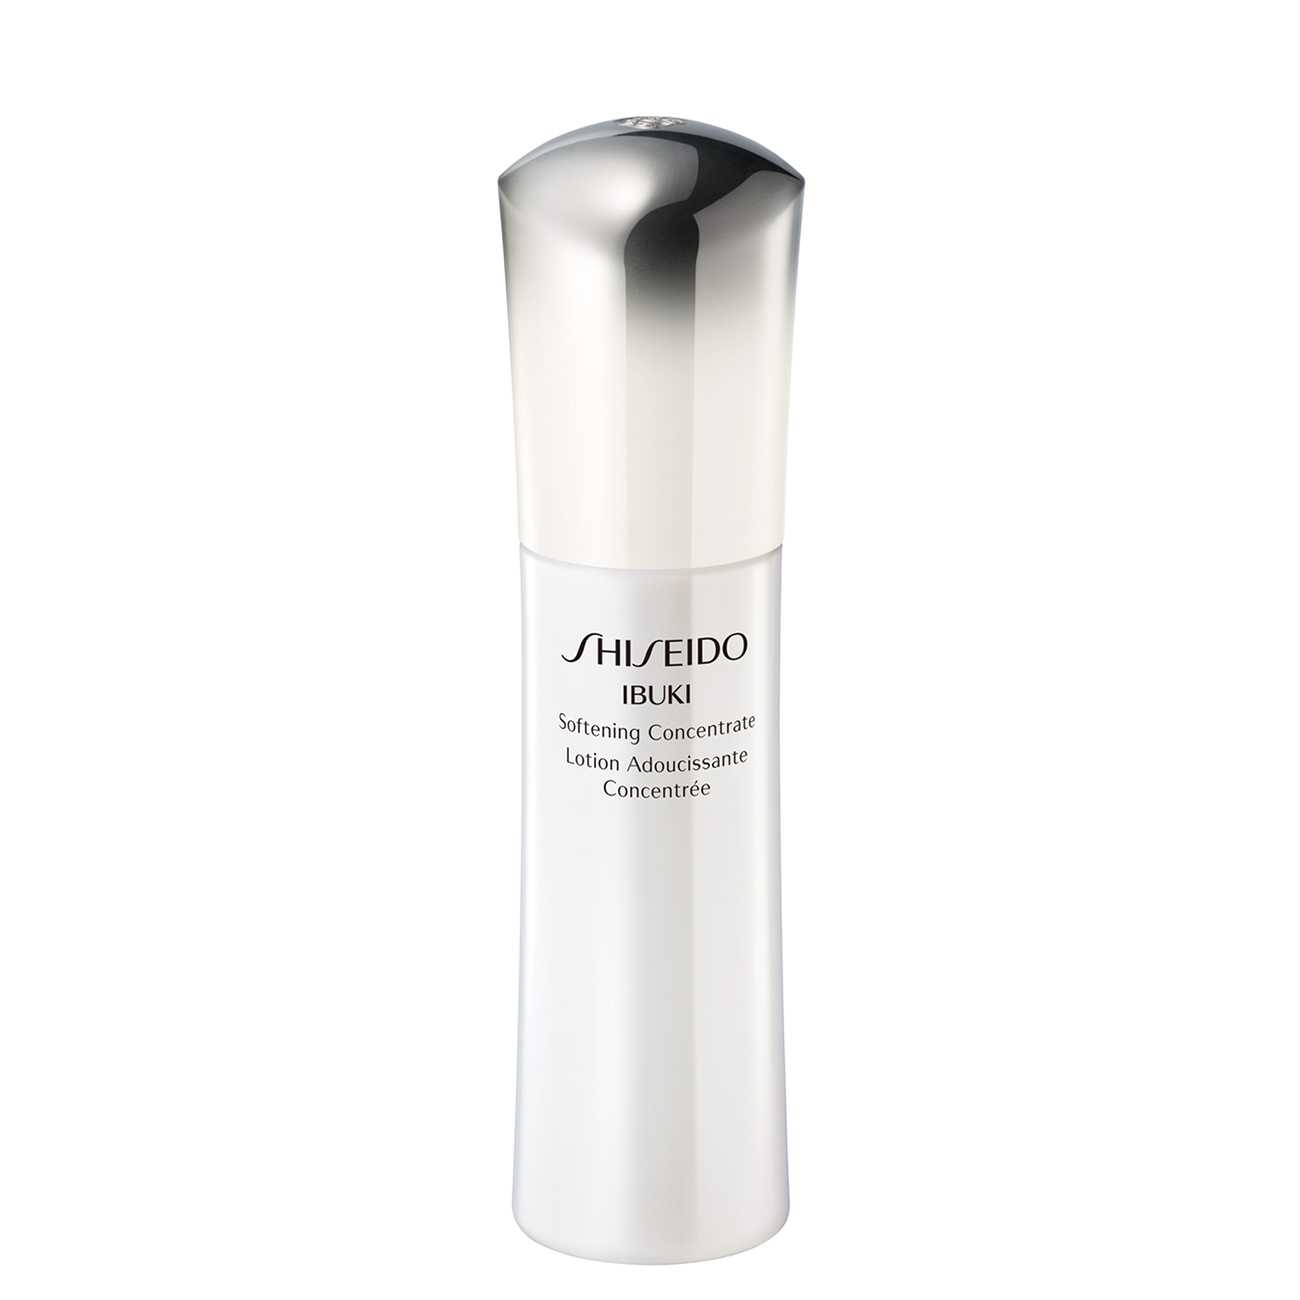 IBUKI SOFTENING CONCENTRATE Shiseido bestvalue.eu